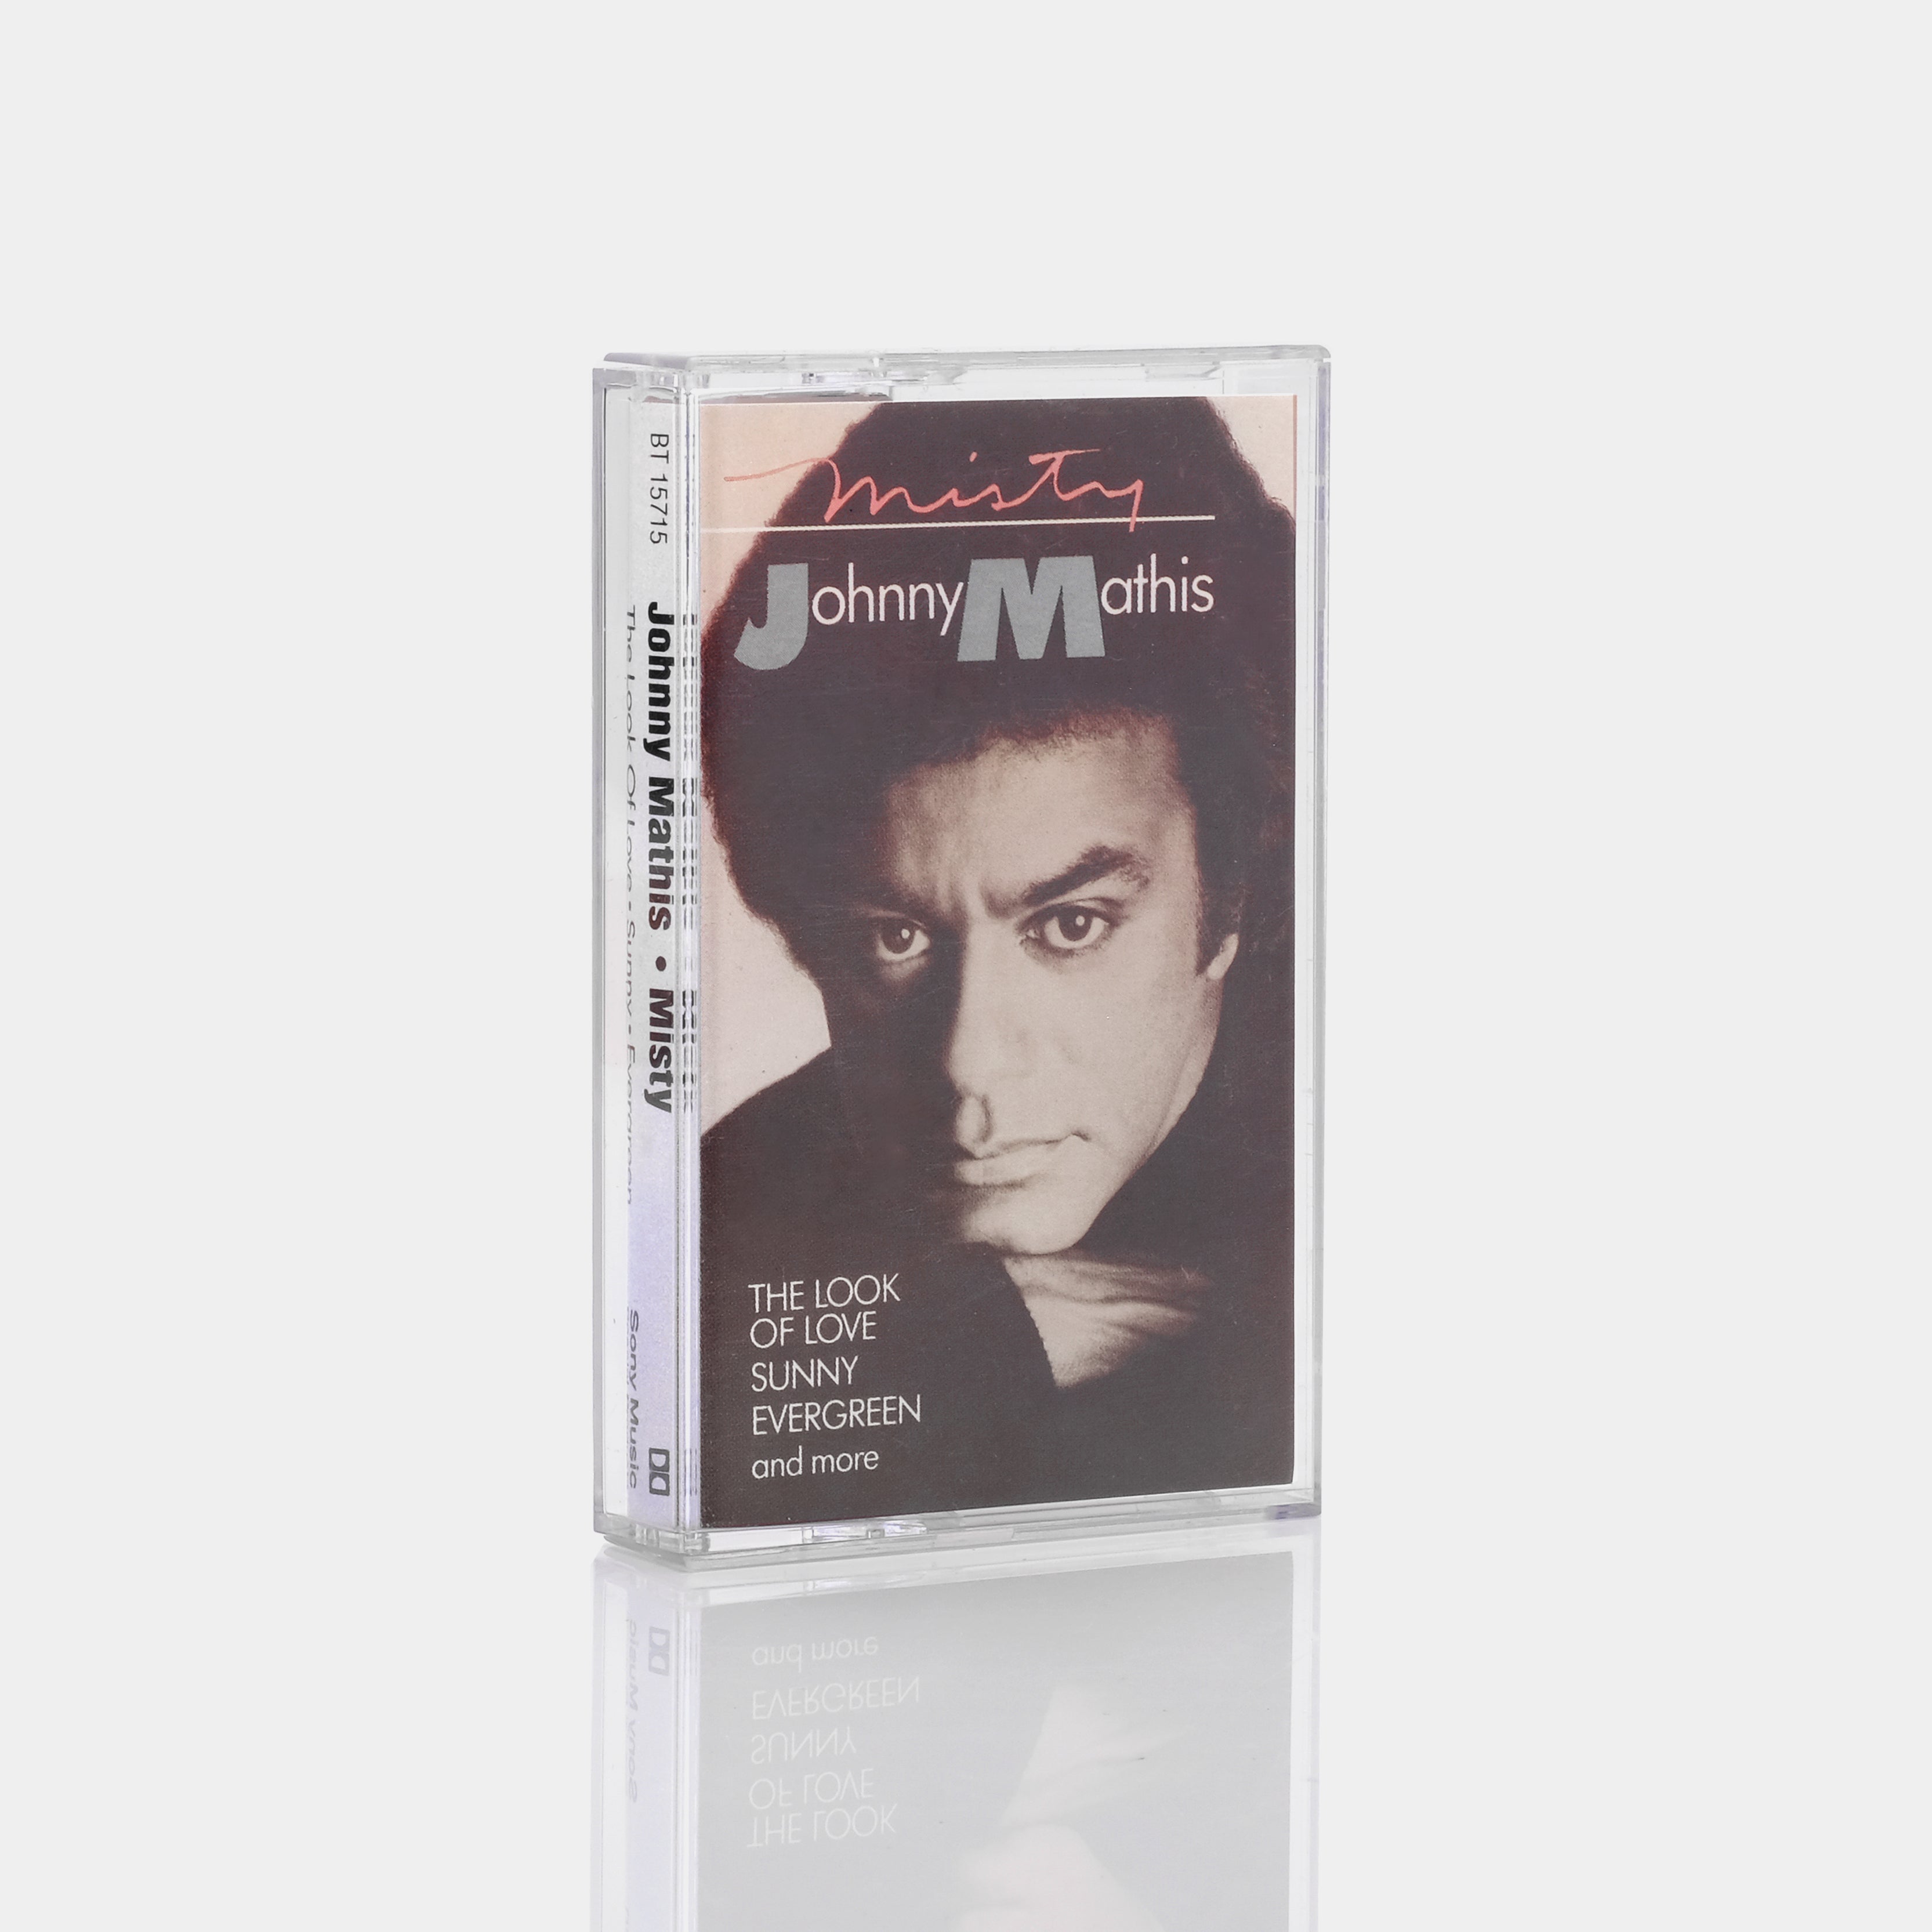 Johnny Mathis - Misty Cassette Tape